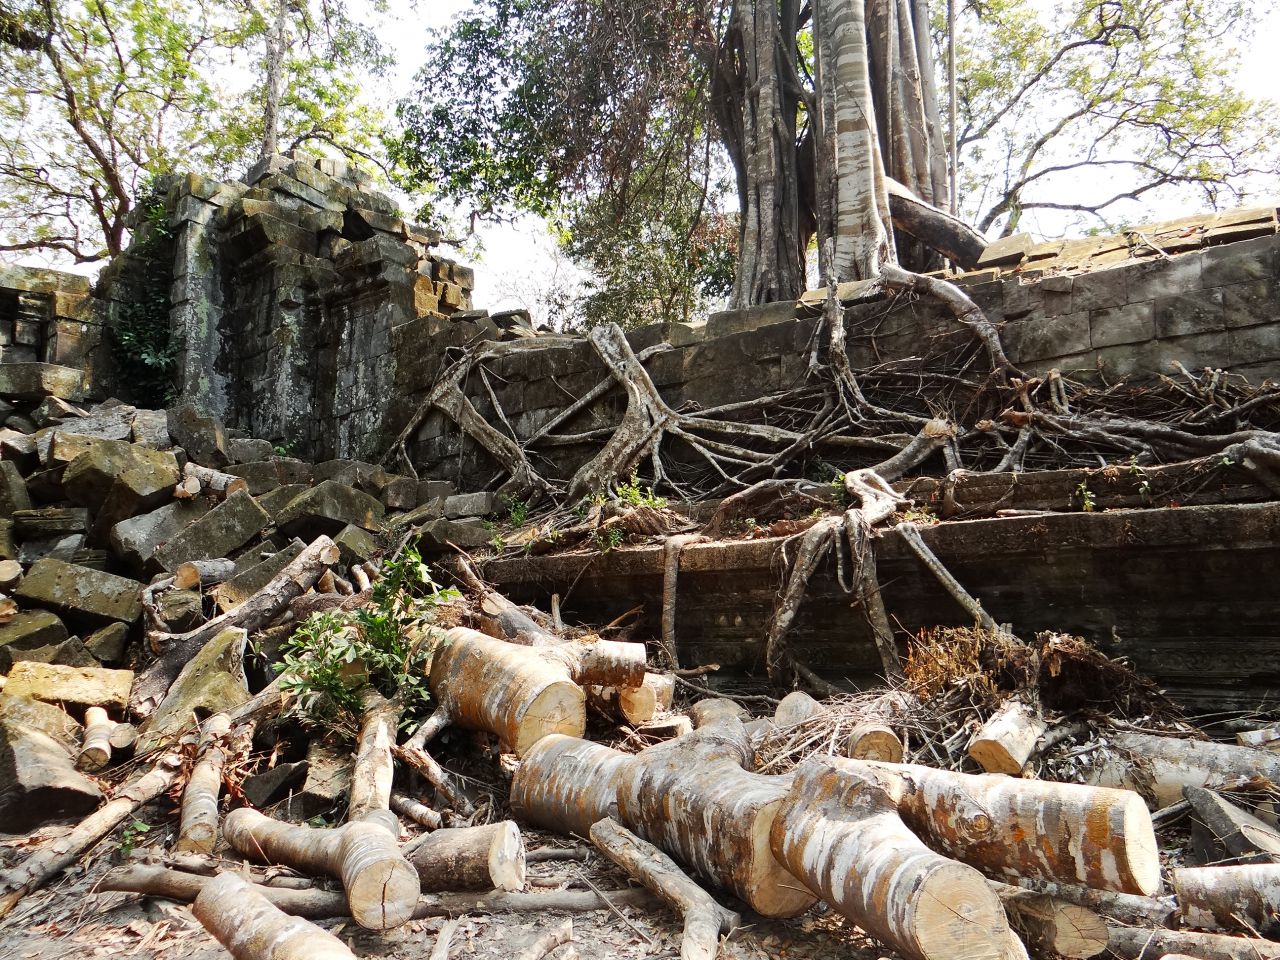 Идет интенсивное освобождение строений от пожирающих их джунглей. - Камбоджа, Лаос. Февраль 2014. Часть 3.